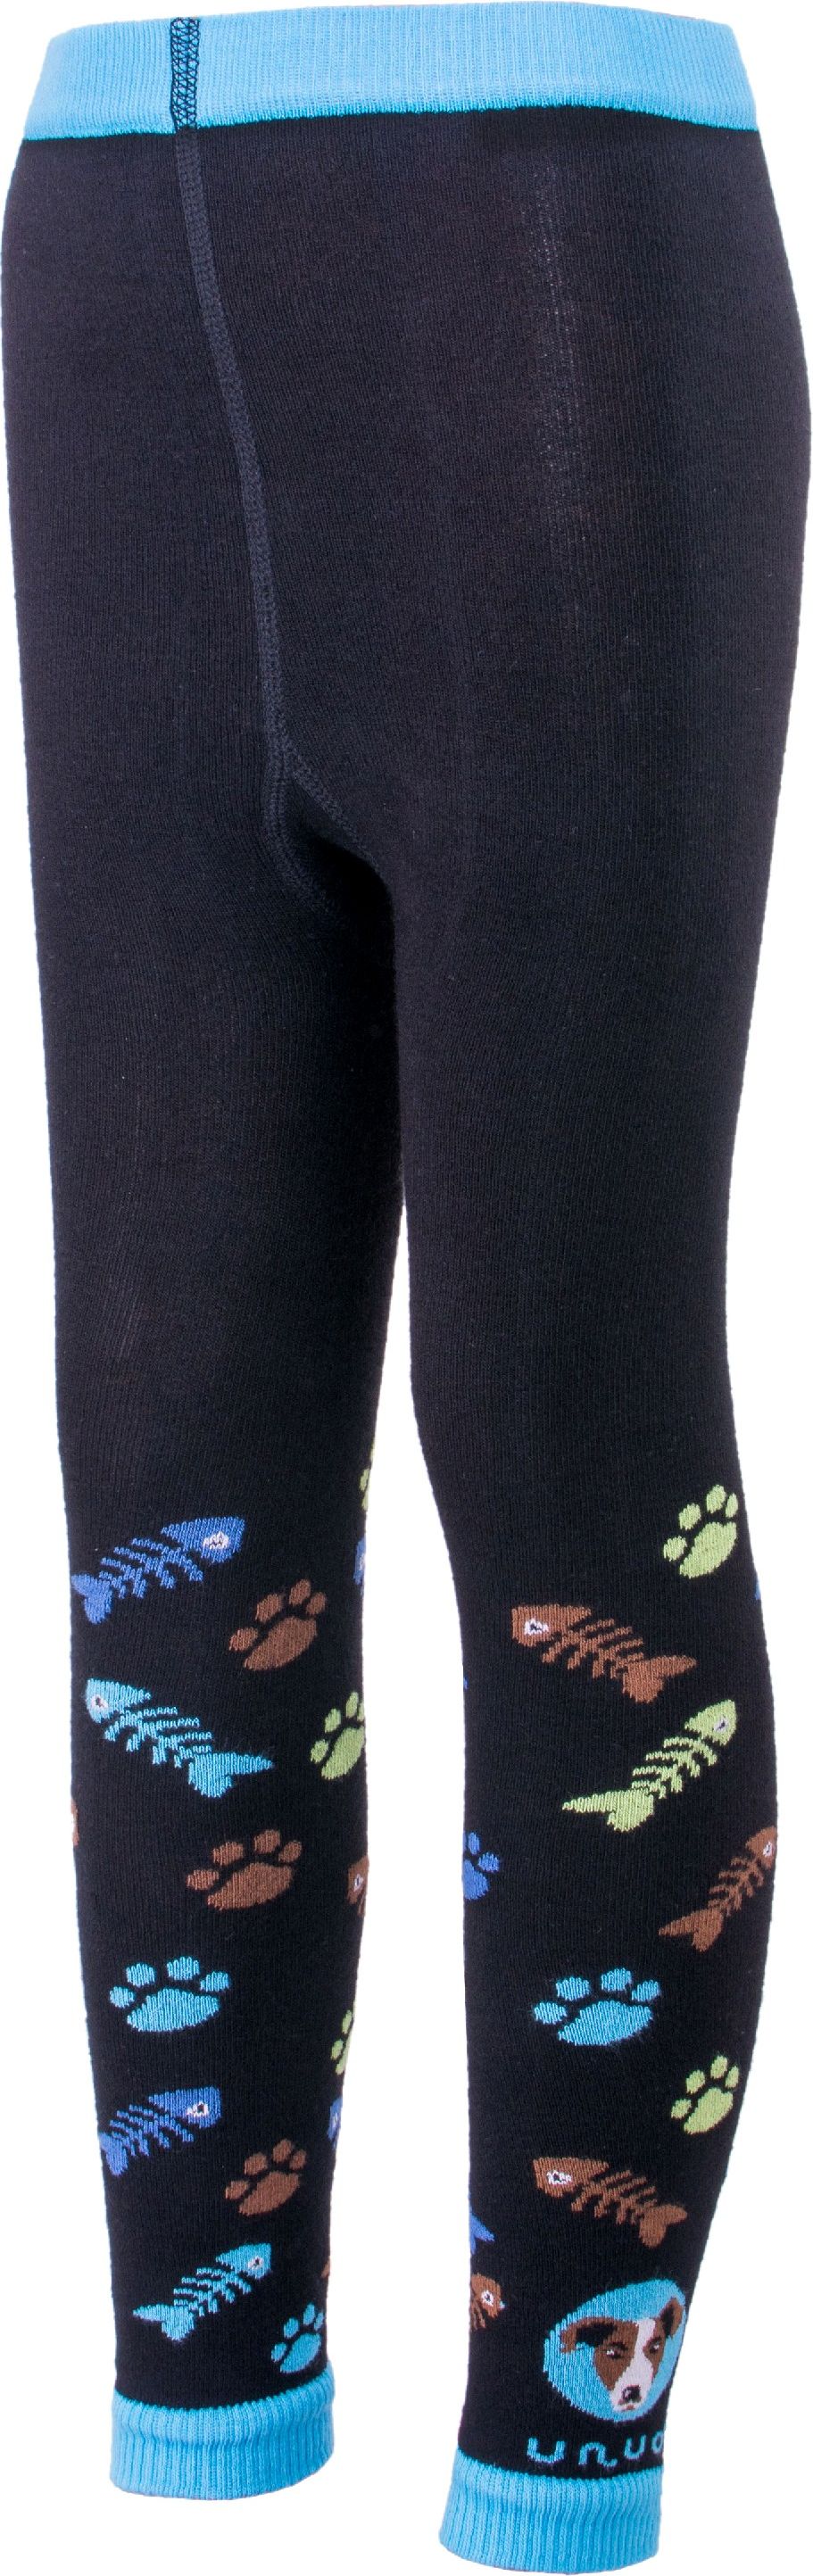 Trepon unuo Bambusové legíny Pes tyrkysové (viscose (bamboo) leggings) Velikost ponožky, punčocháče, legíny (Size socks) EU: 98/104 - obrázek 1